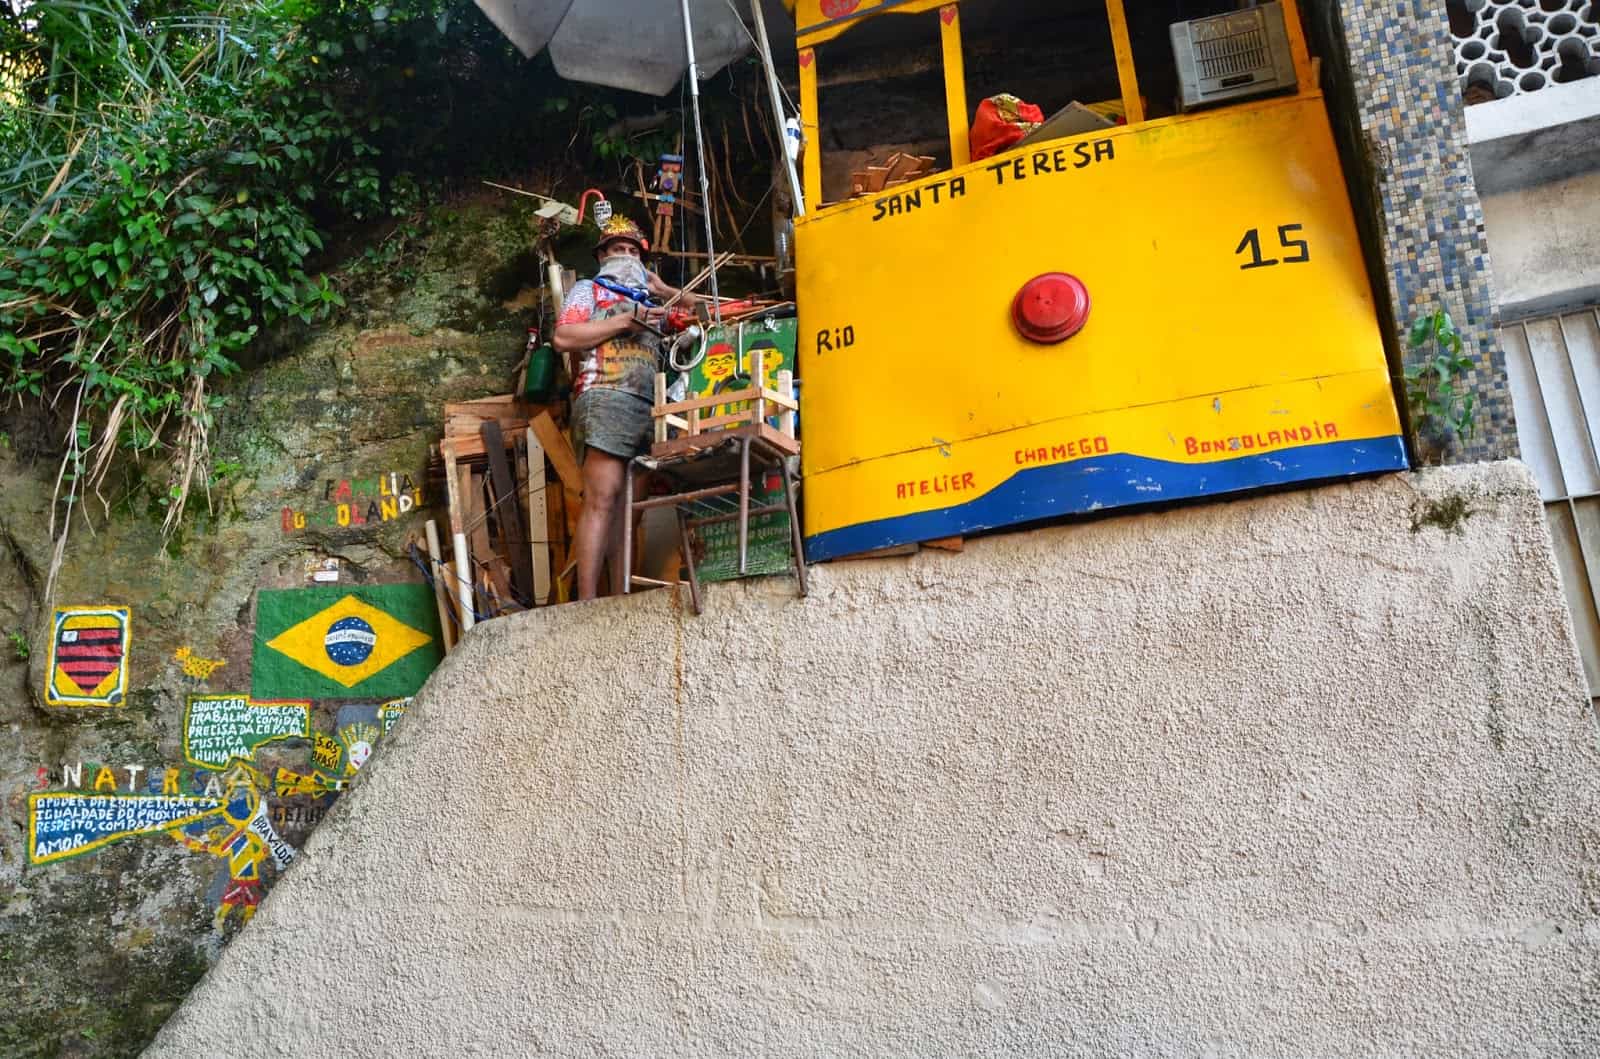 An artist in Santa Teresa in Rio de Janeiro, Brazil